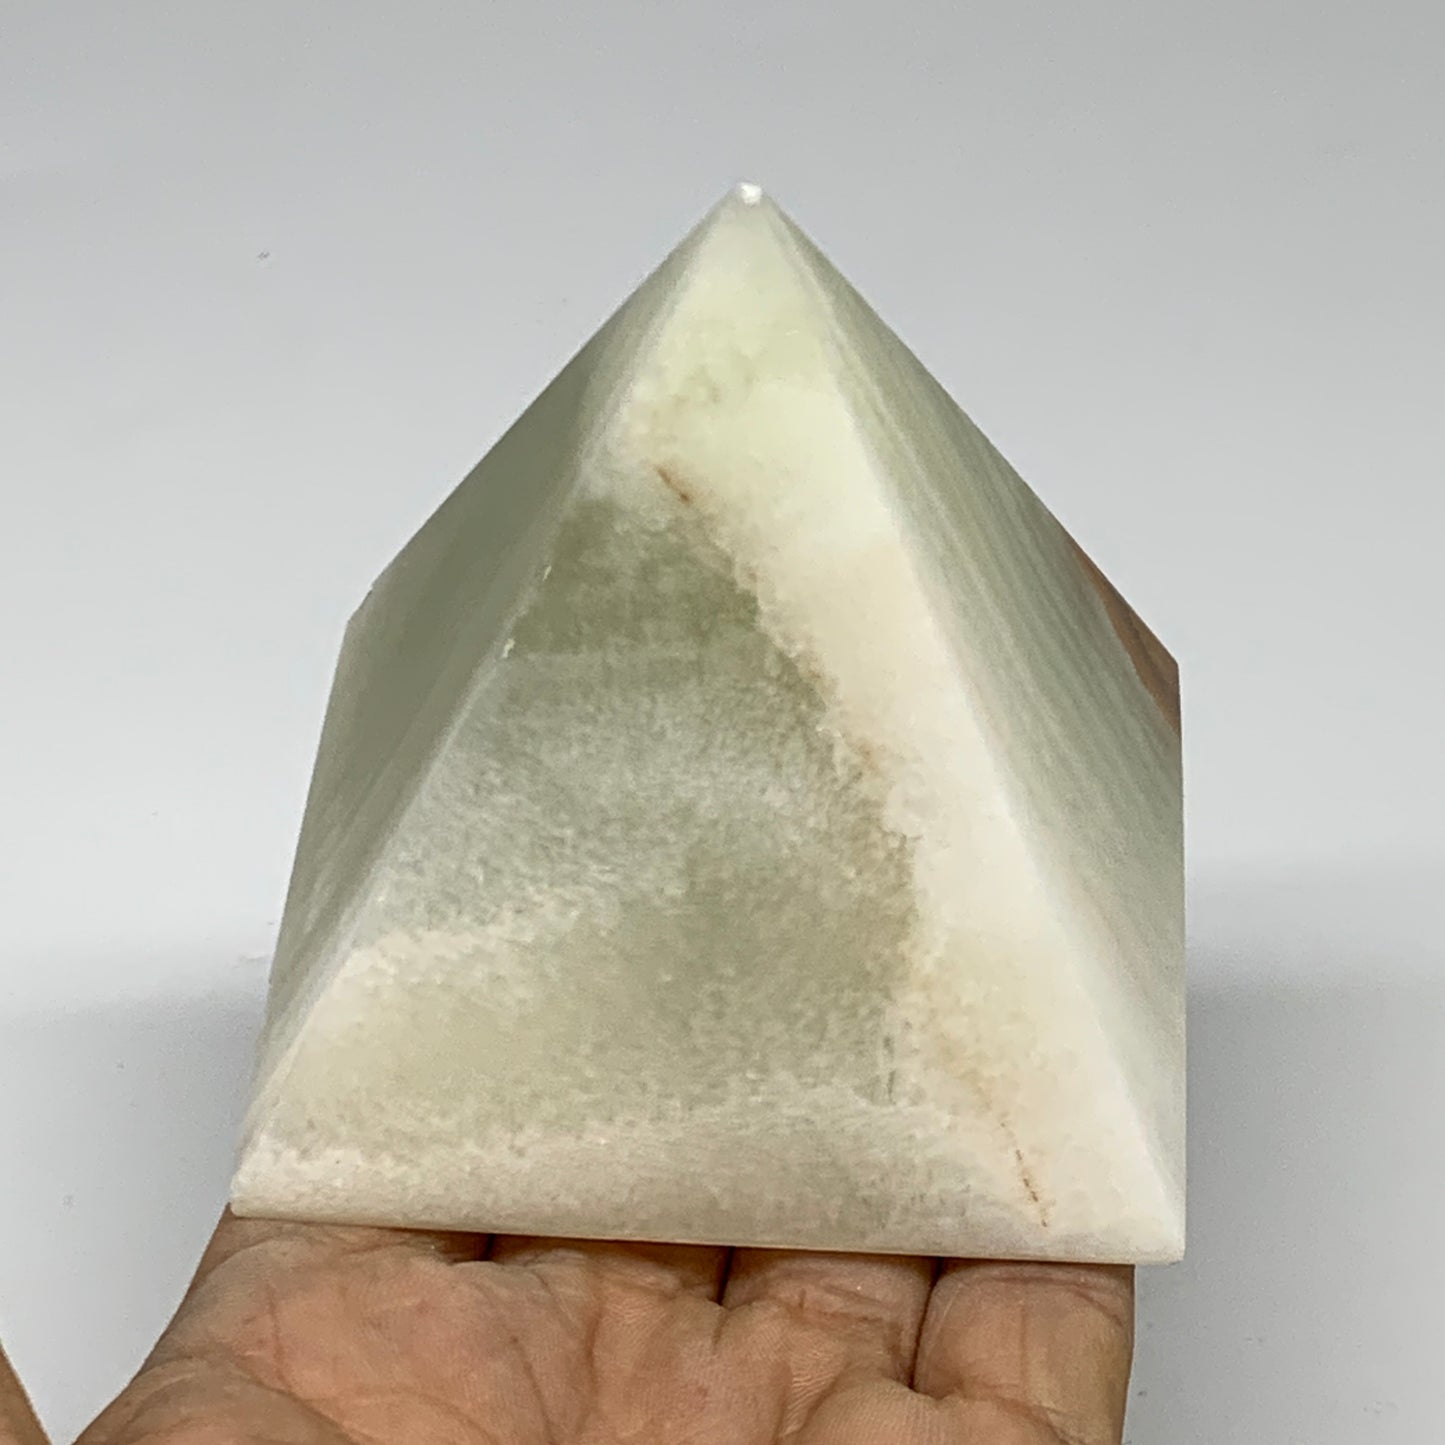 0.87 lbs, 2.8"x2.9"x2.9", Green Onyx Pyramid Gemstone Crystal, B32474